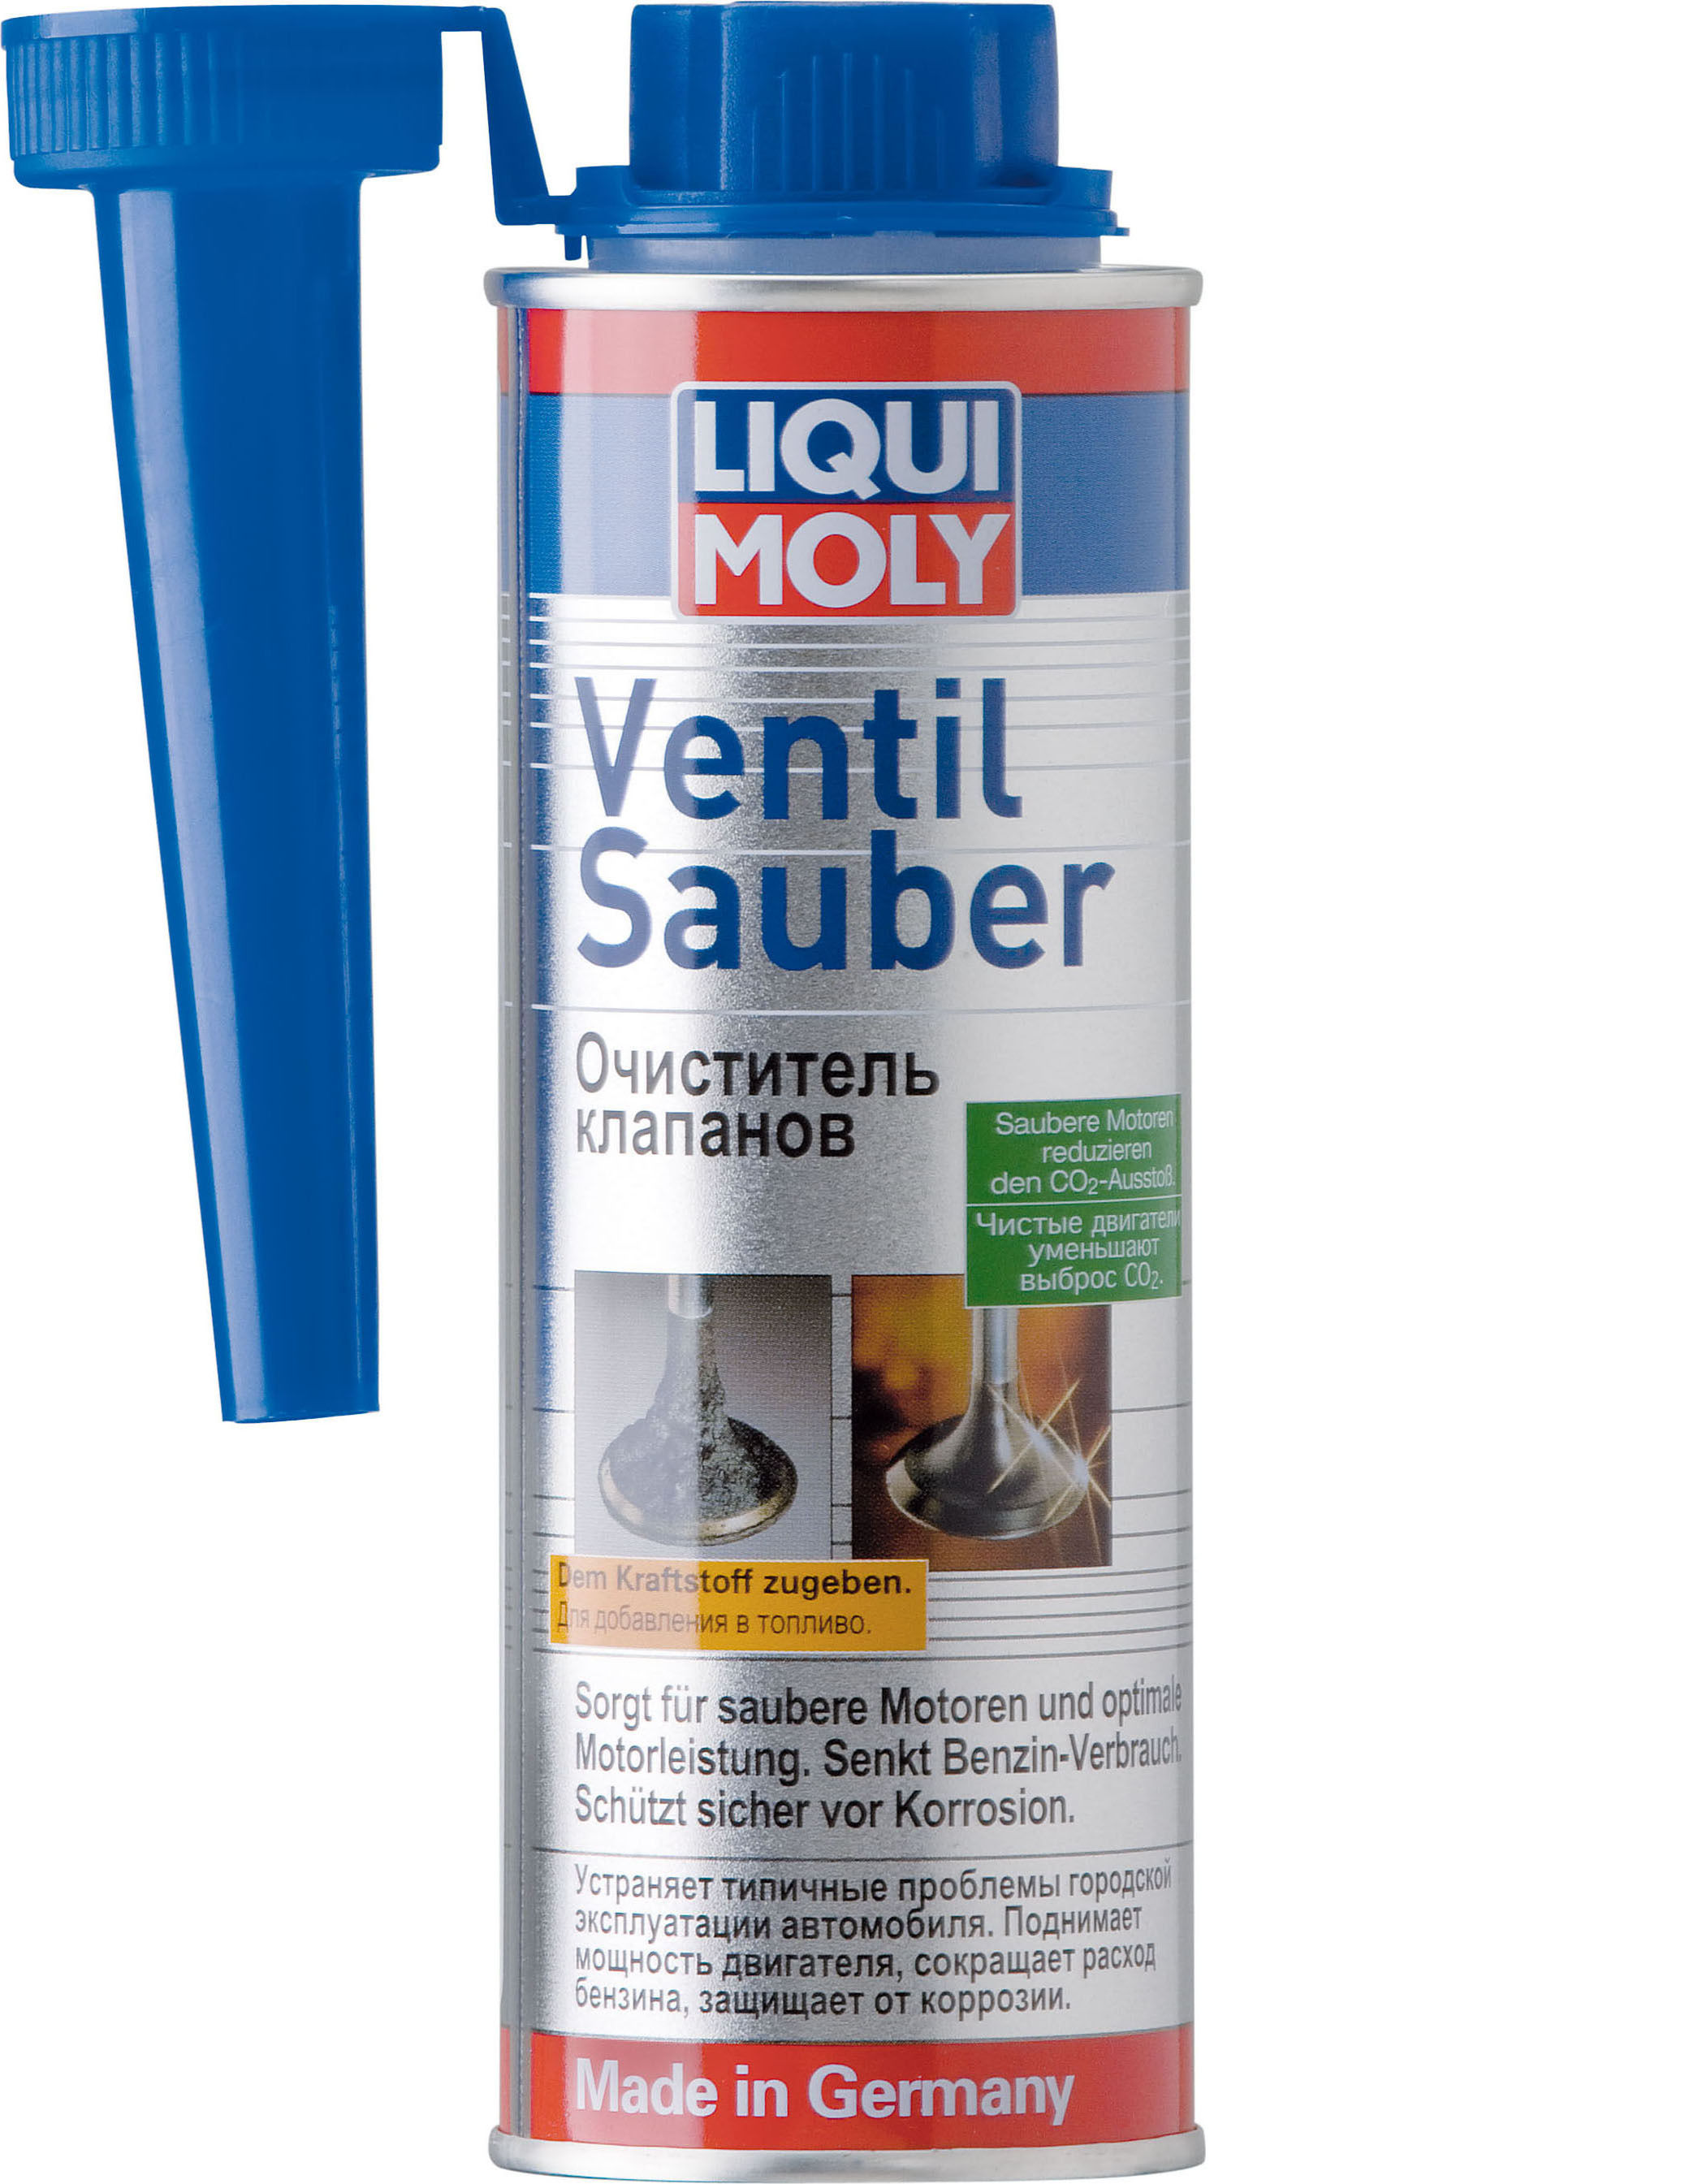 Очиститель клапанов LIQUI MOLY Ventil Sauber (0,25 литра)